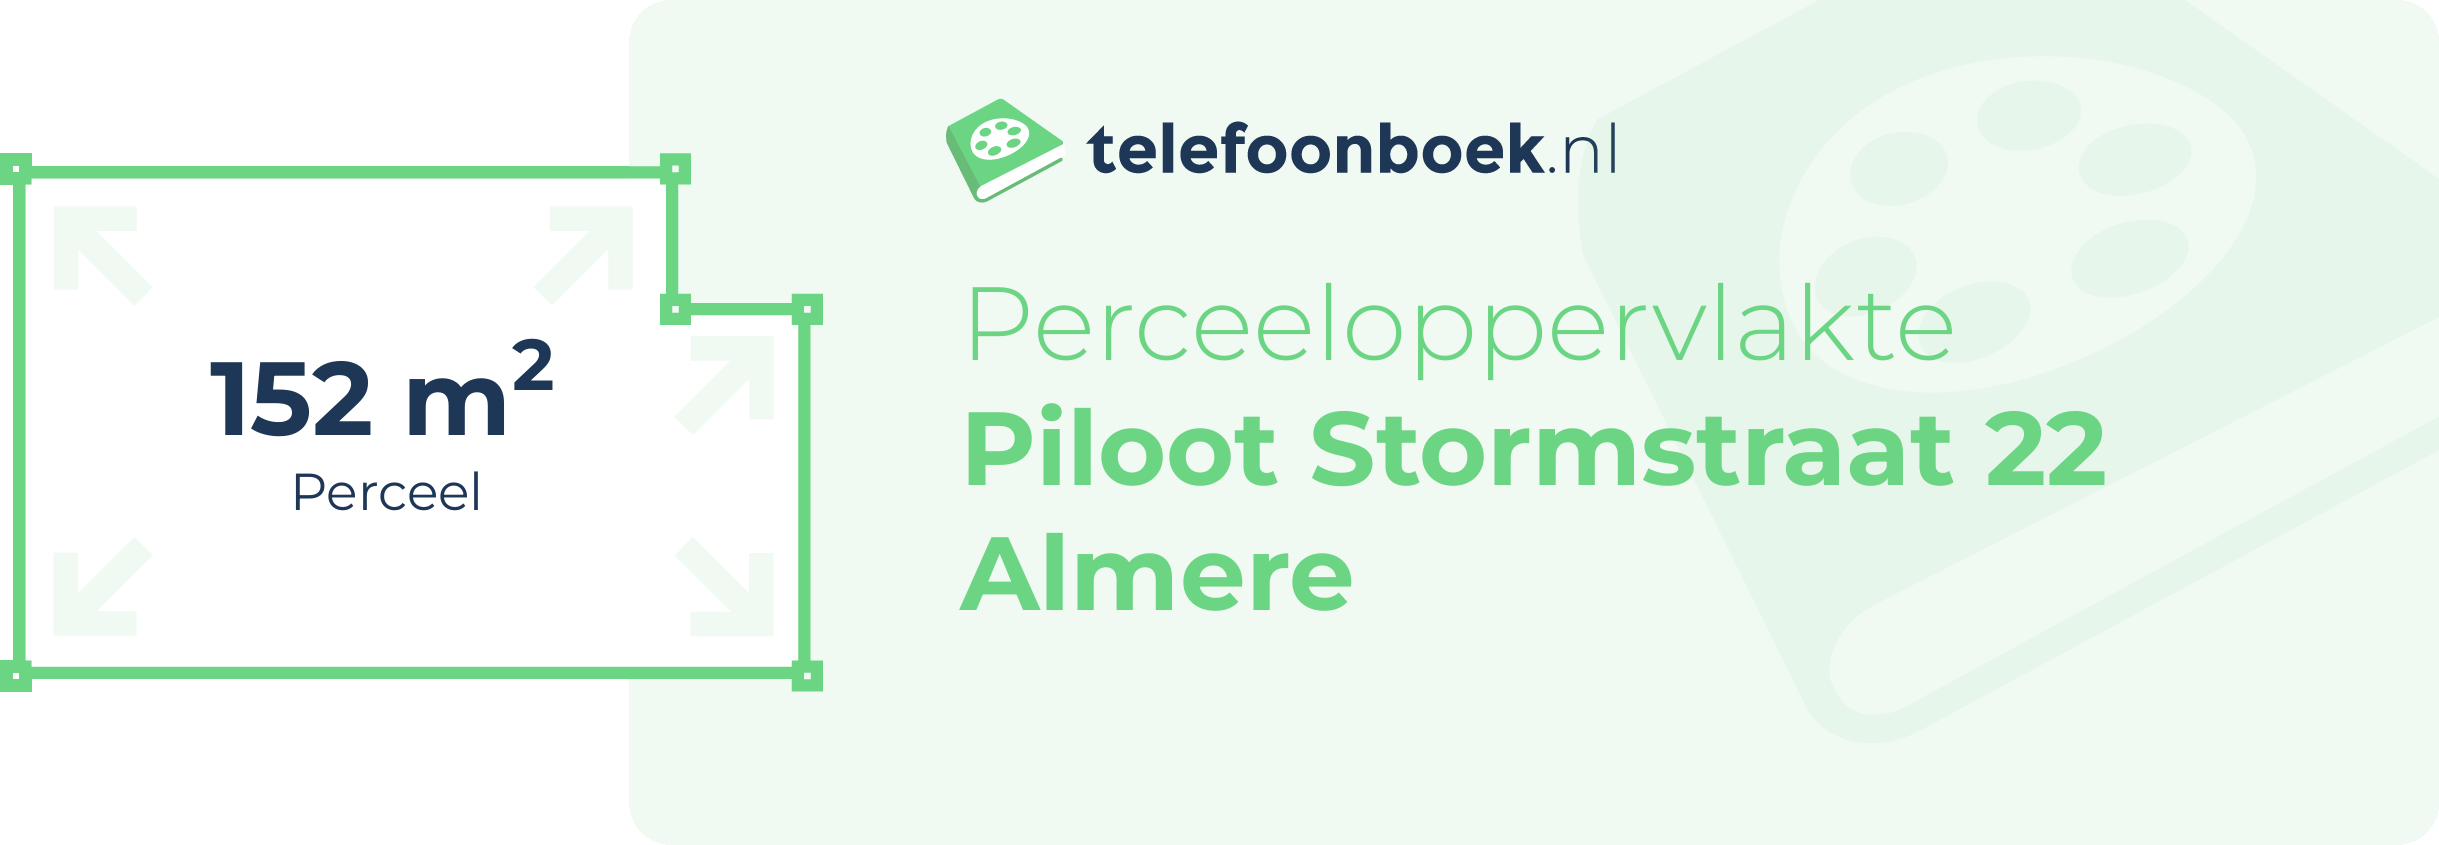 Perceeloppervlakte Piloot Stormstraat 22 Almere